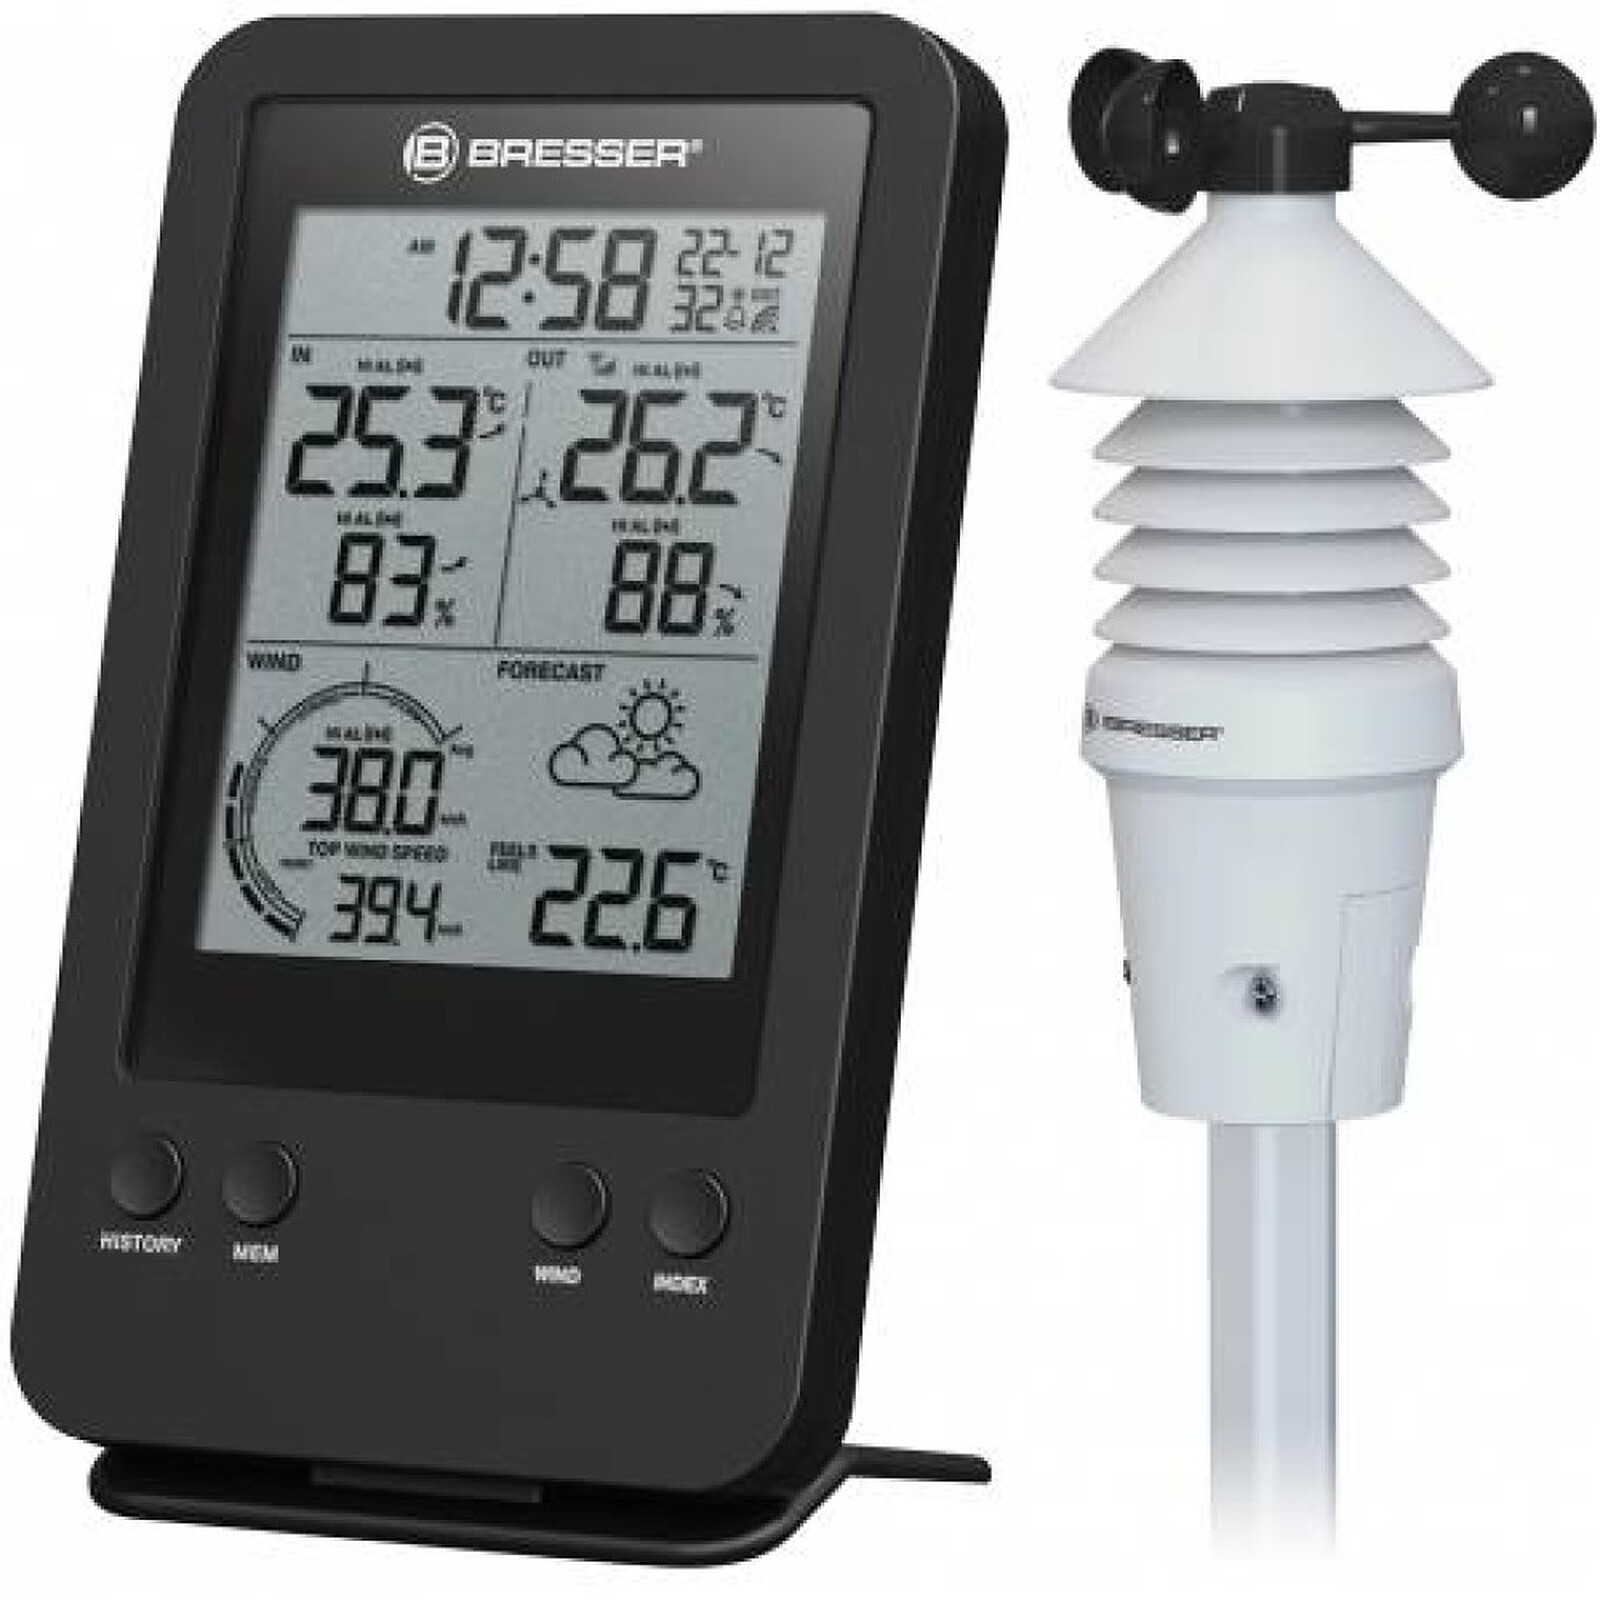 Thermomètre intérieur à écran LCD - Blanc - Otio - Station Météo - LDLC